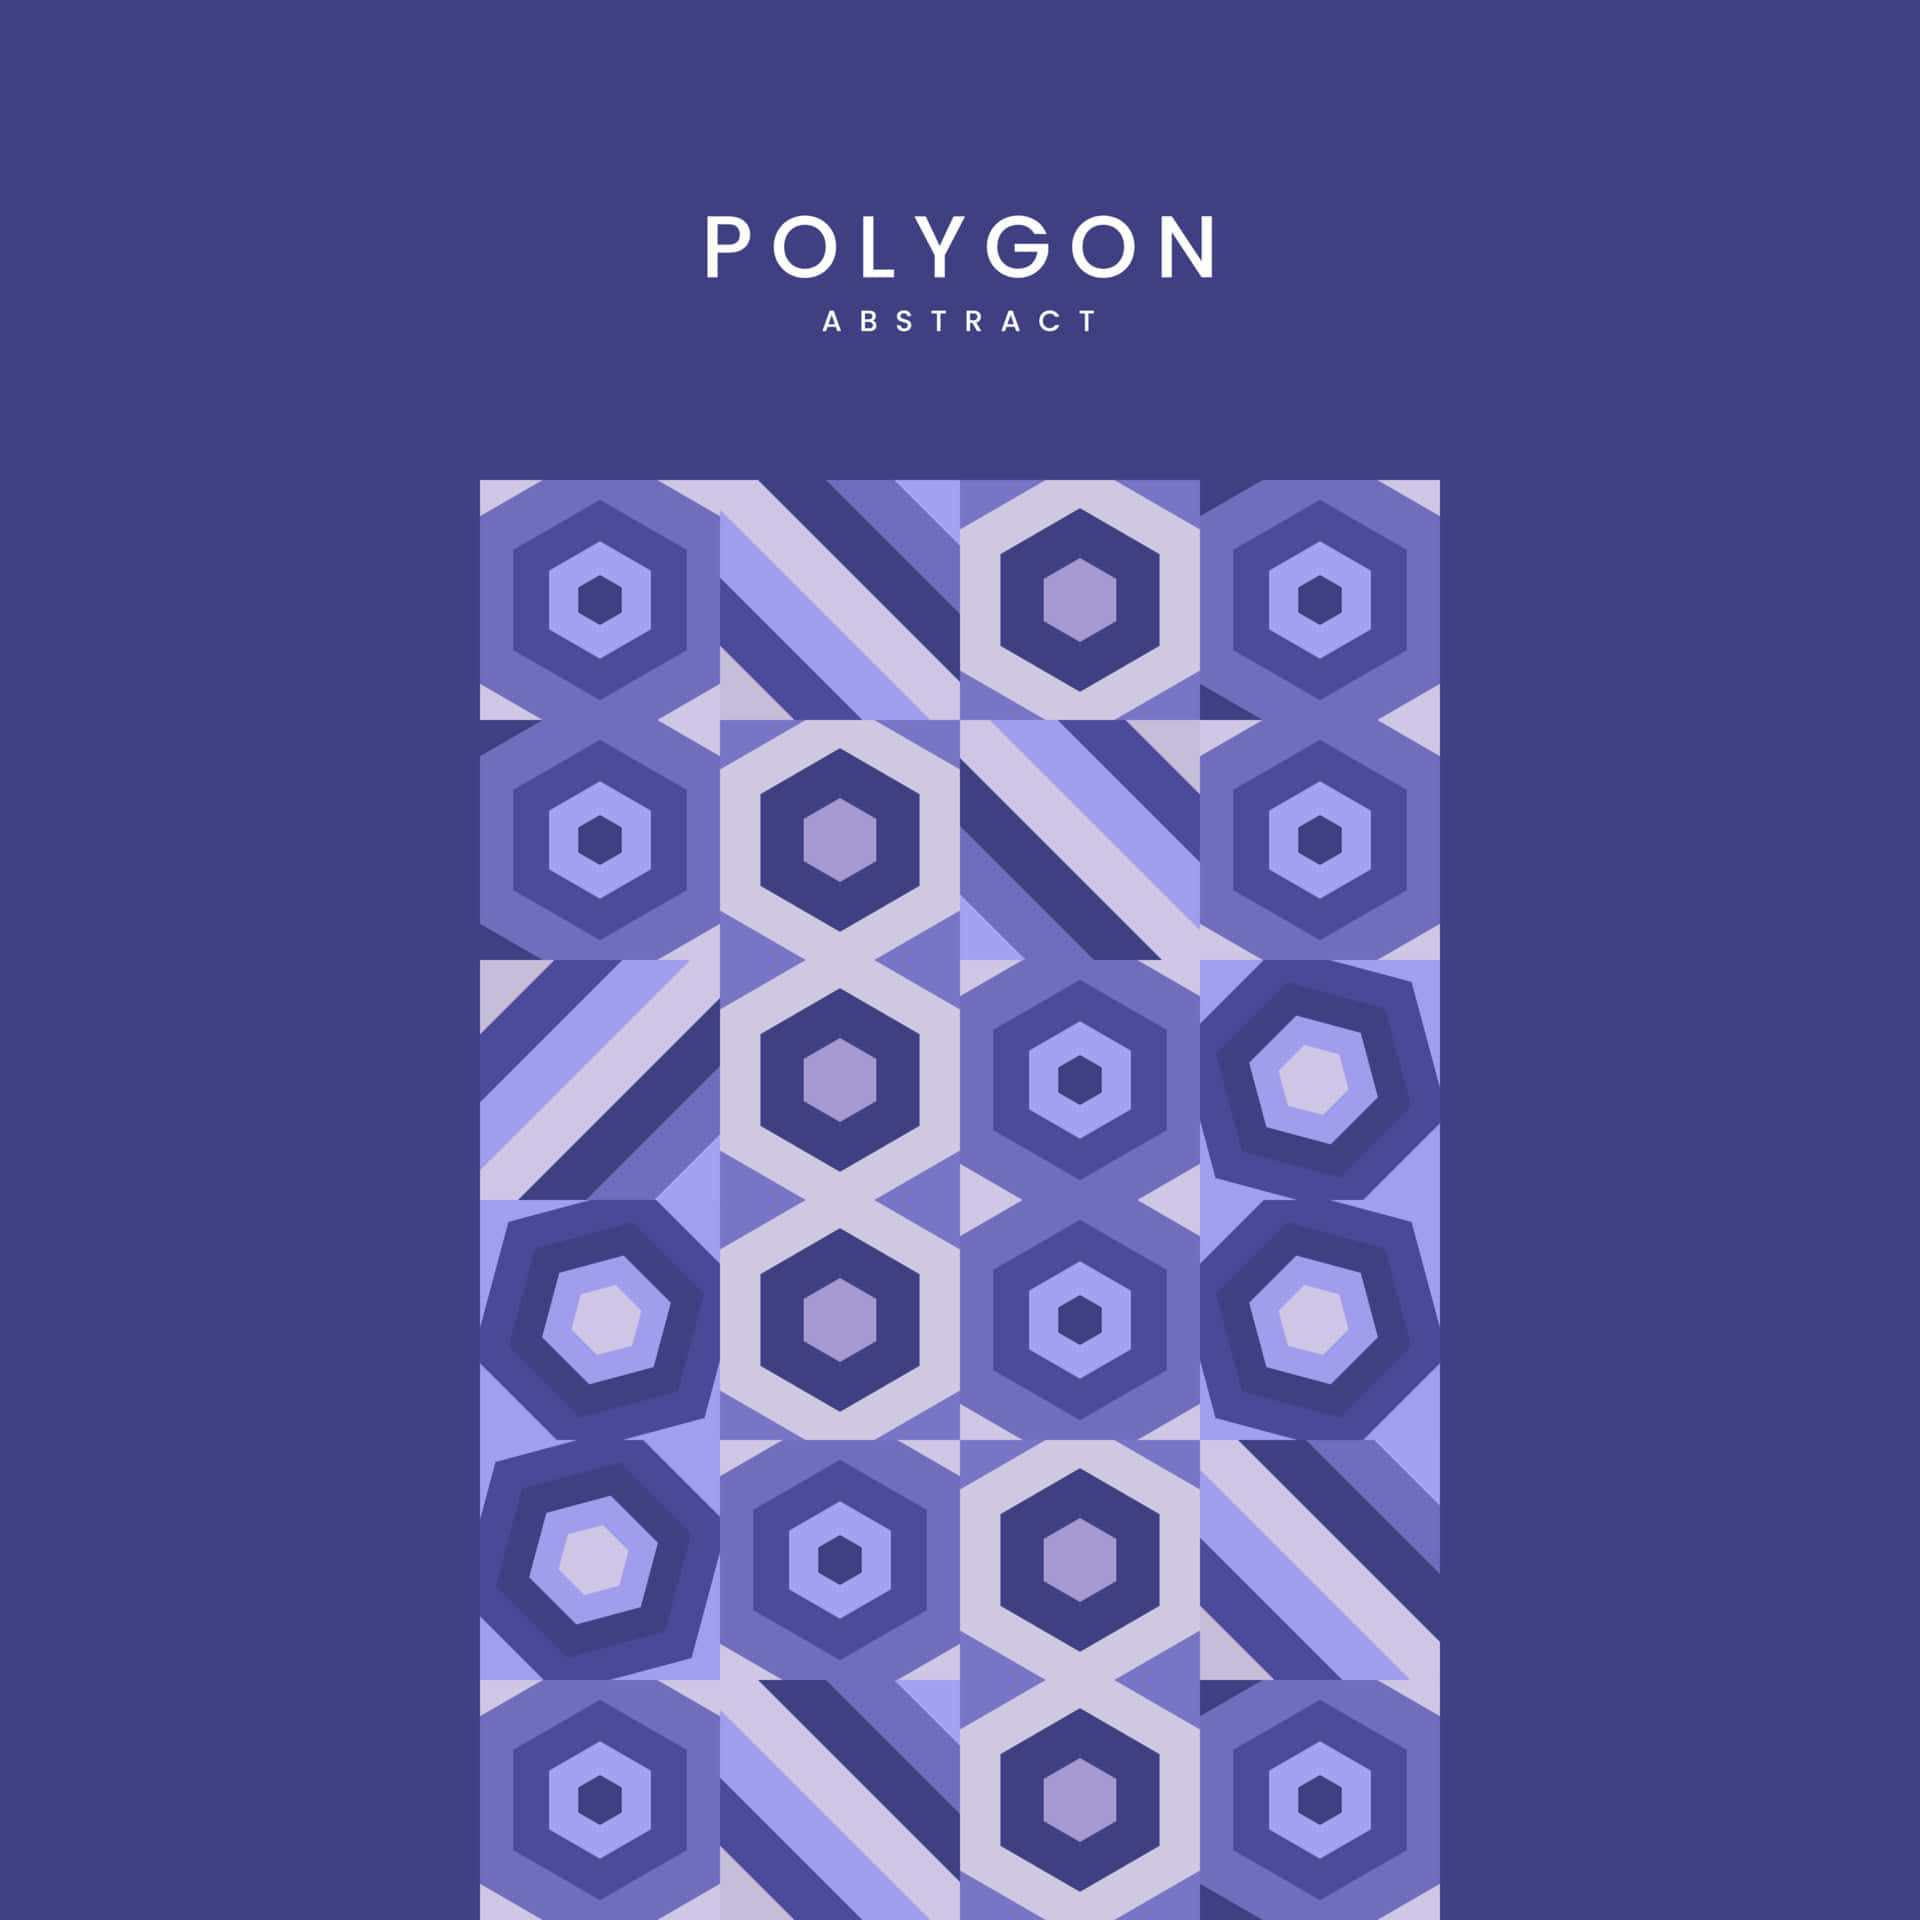 Imágenesde Polígonos